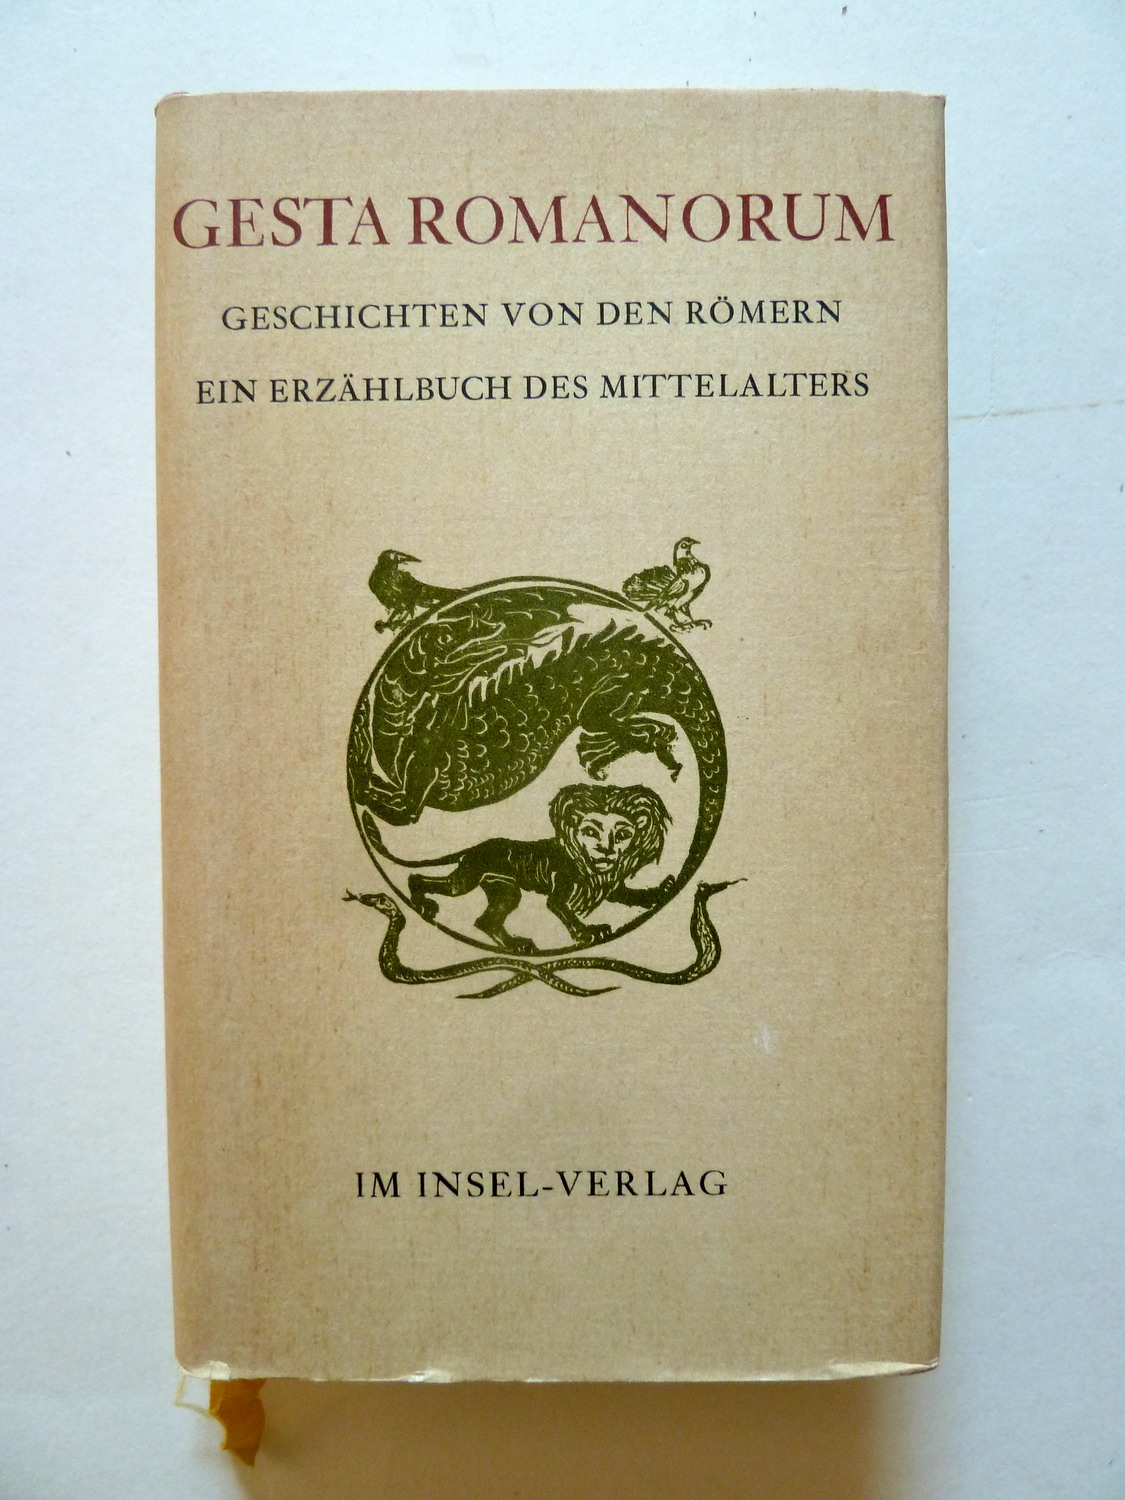 Gesta Romanorum - Geschichten von den Römern. Ein Erzählbuch des Mittelalters. Winfried Trillitzsch. Leipzig, Insel-Verlag, 1973.